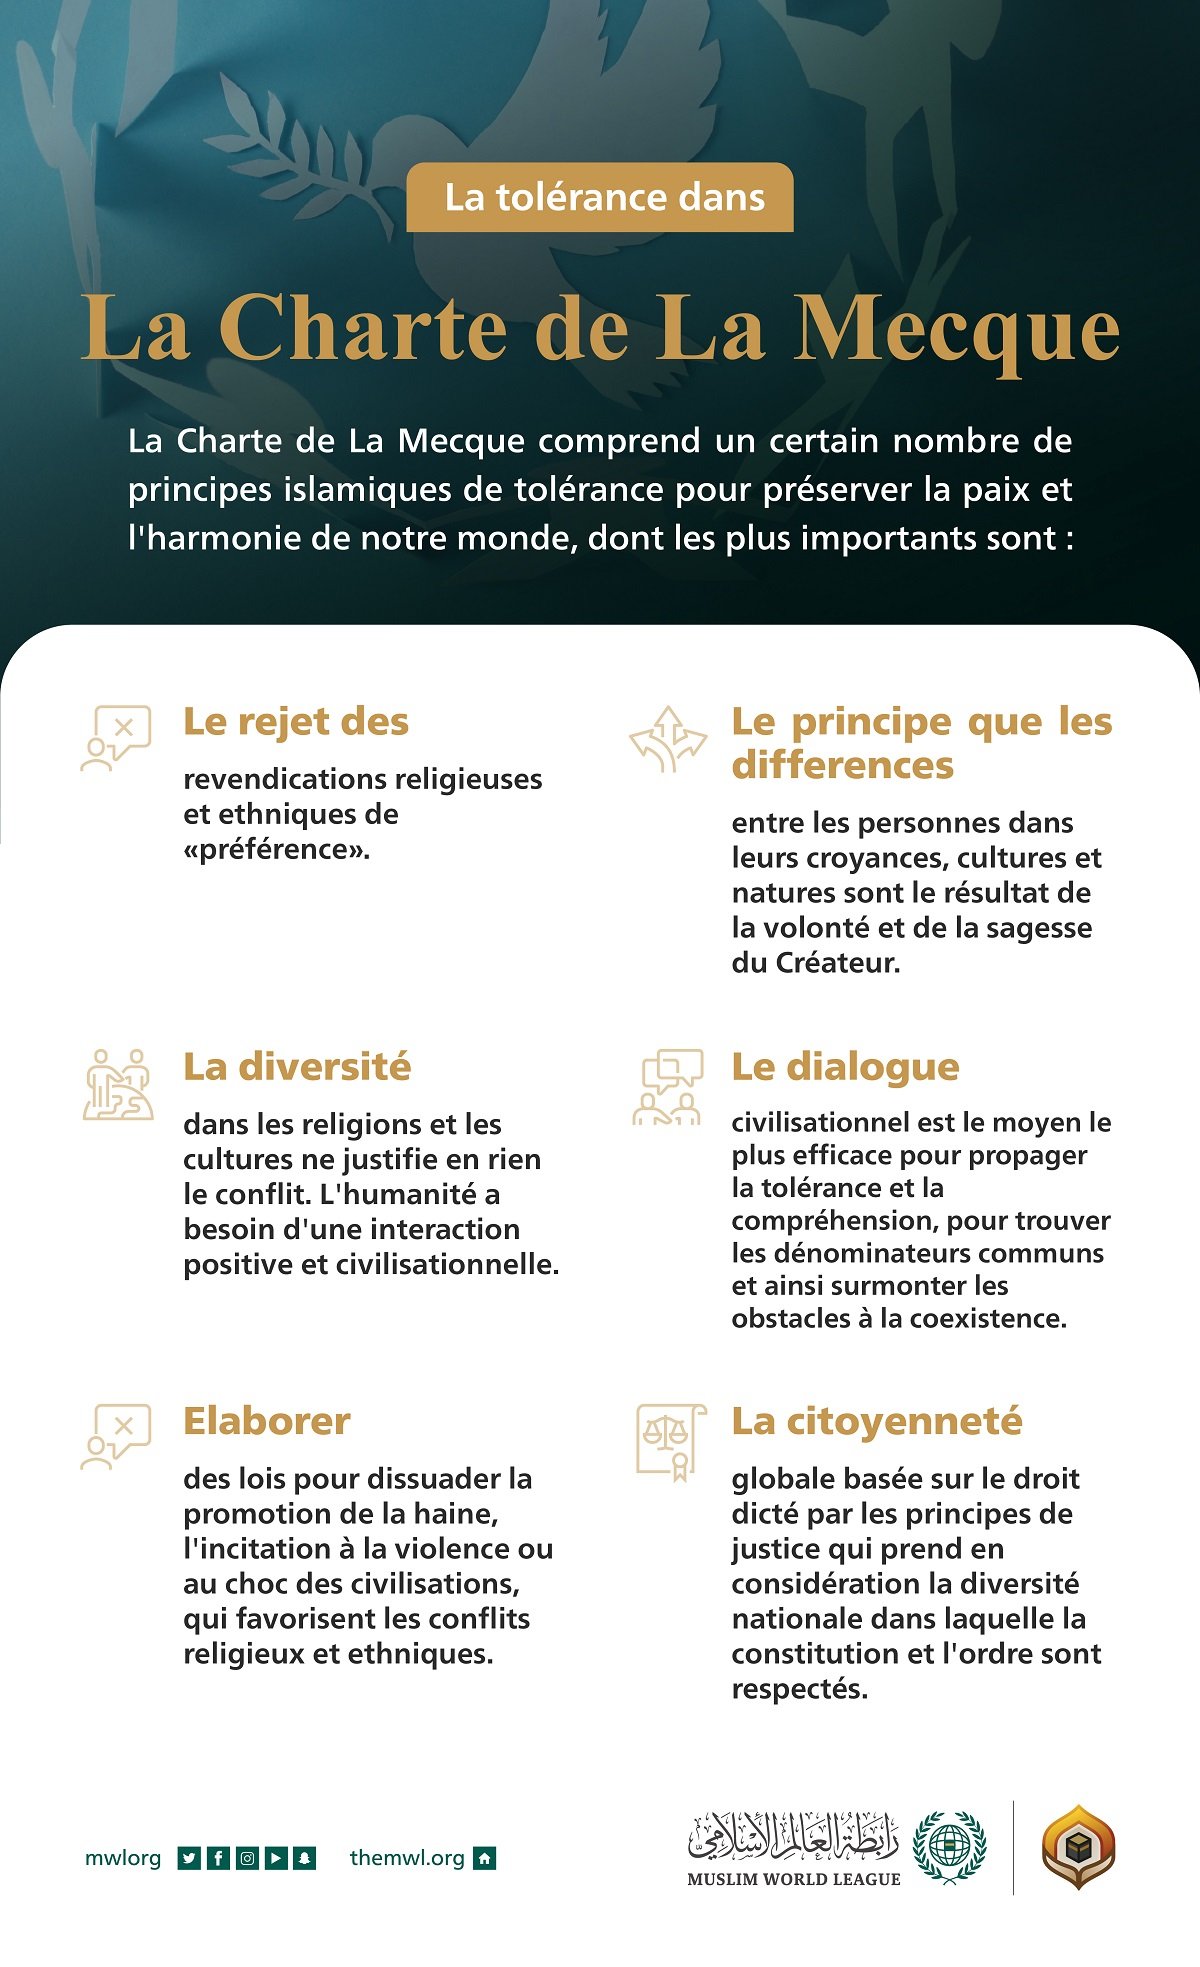 La Charte de La Mecque comprend des fondements islamiques de tolérance qui sont essentiels pour la paix des sociétés.